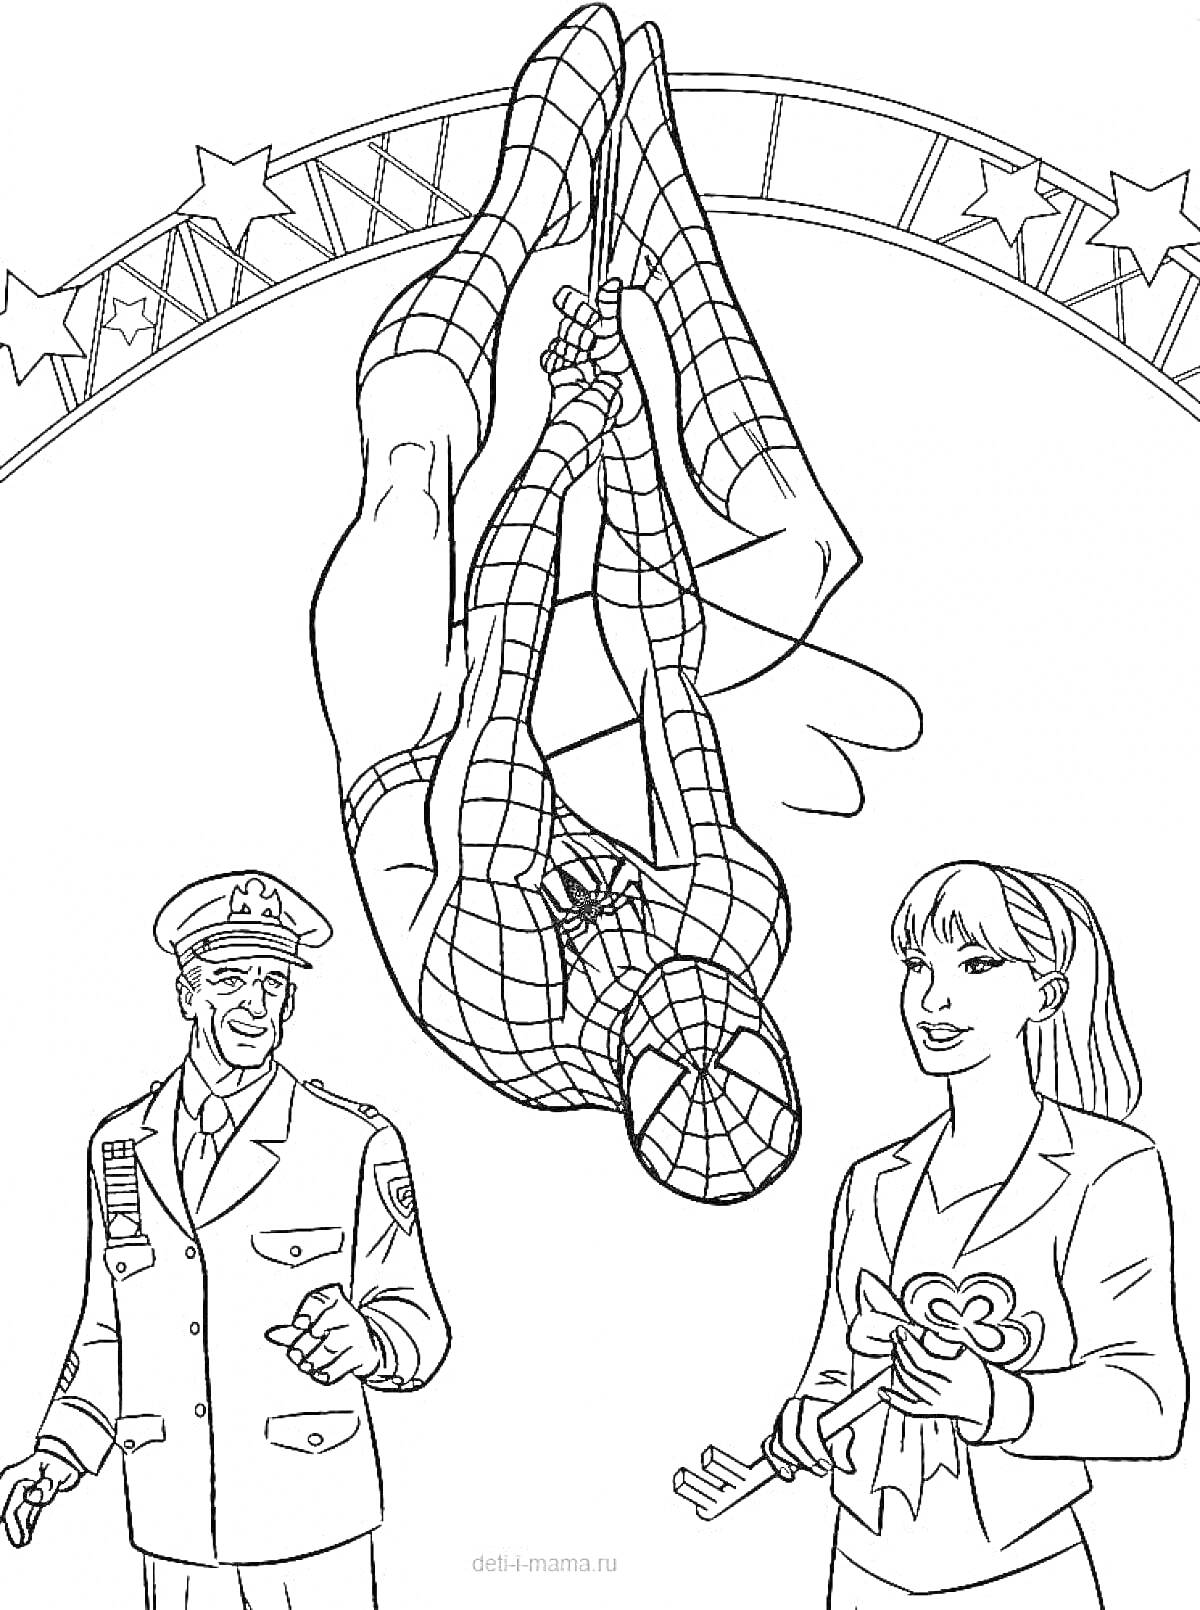 Человек-паук, полицейский и женщина под аркой со звездами